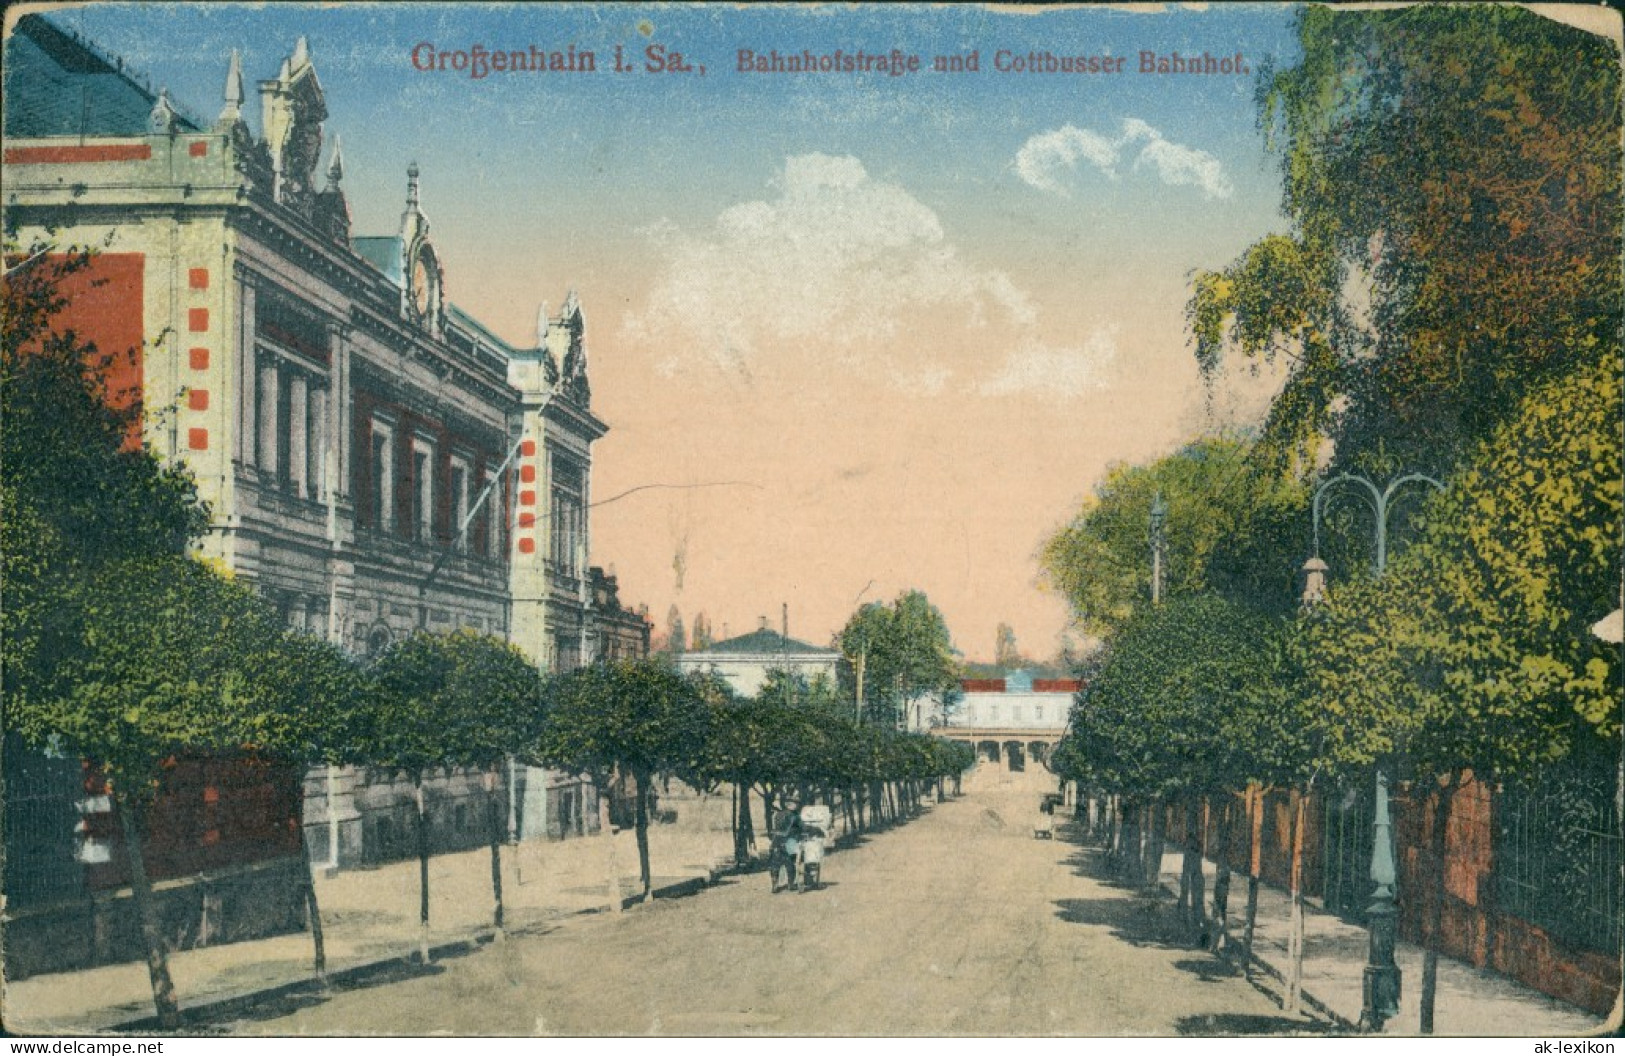 Ansichtskarte Großenhain Bahnhofstraße Cottbusser Bahnhof 1913 - Grossenhain